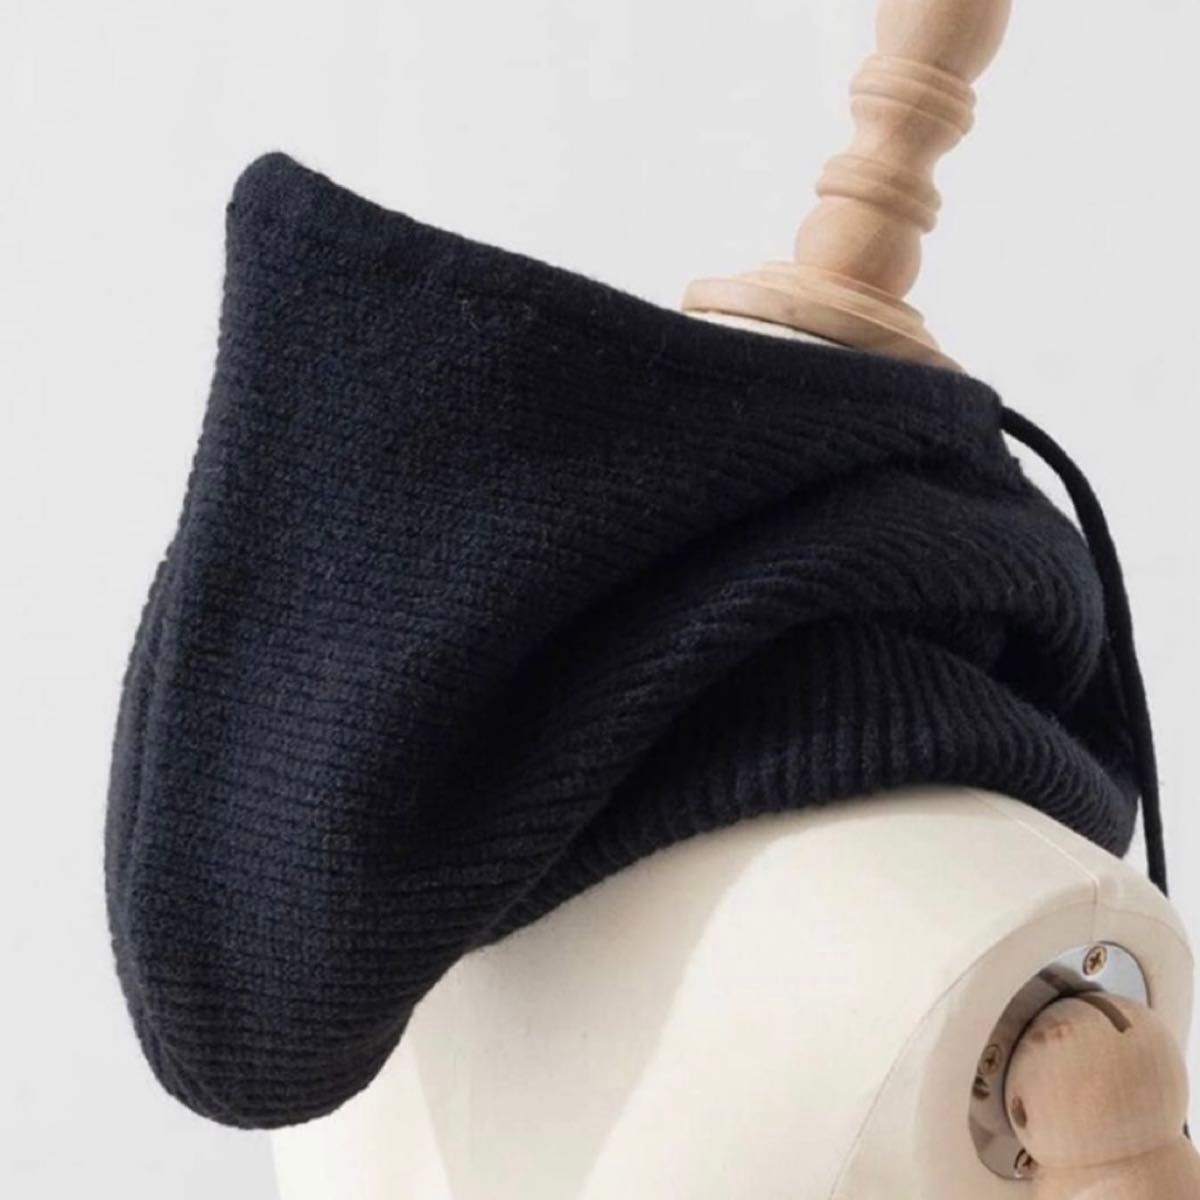 【ブラック】 バラクラバ フード 帽子 韓国 流行り ニット ニット帽 防寒 ネックウォーマー ブラック  マフラー 冬 2way